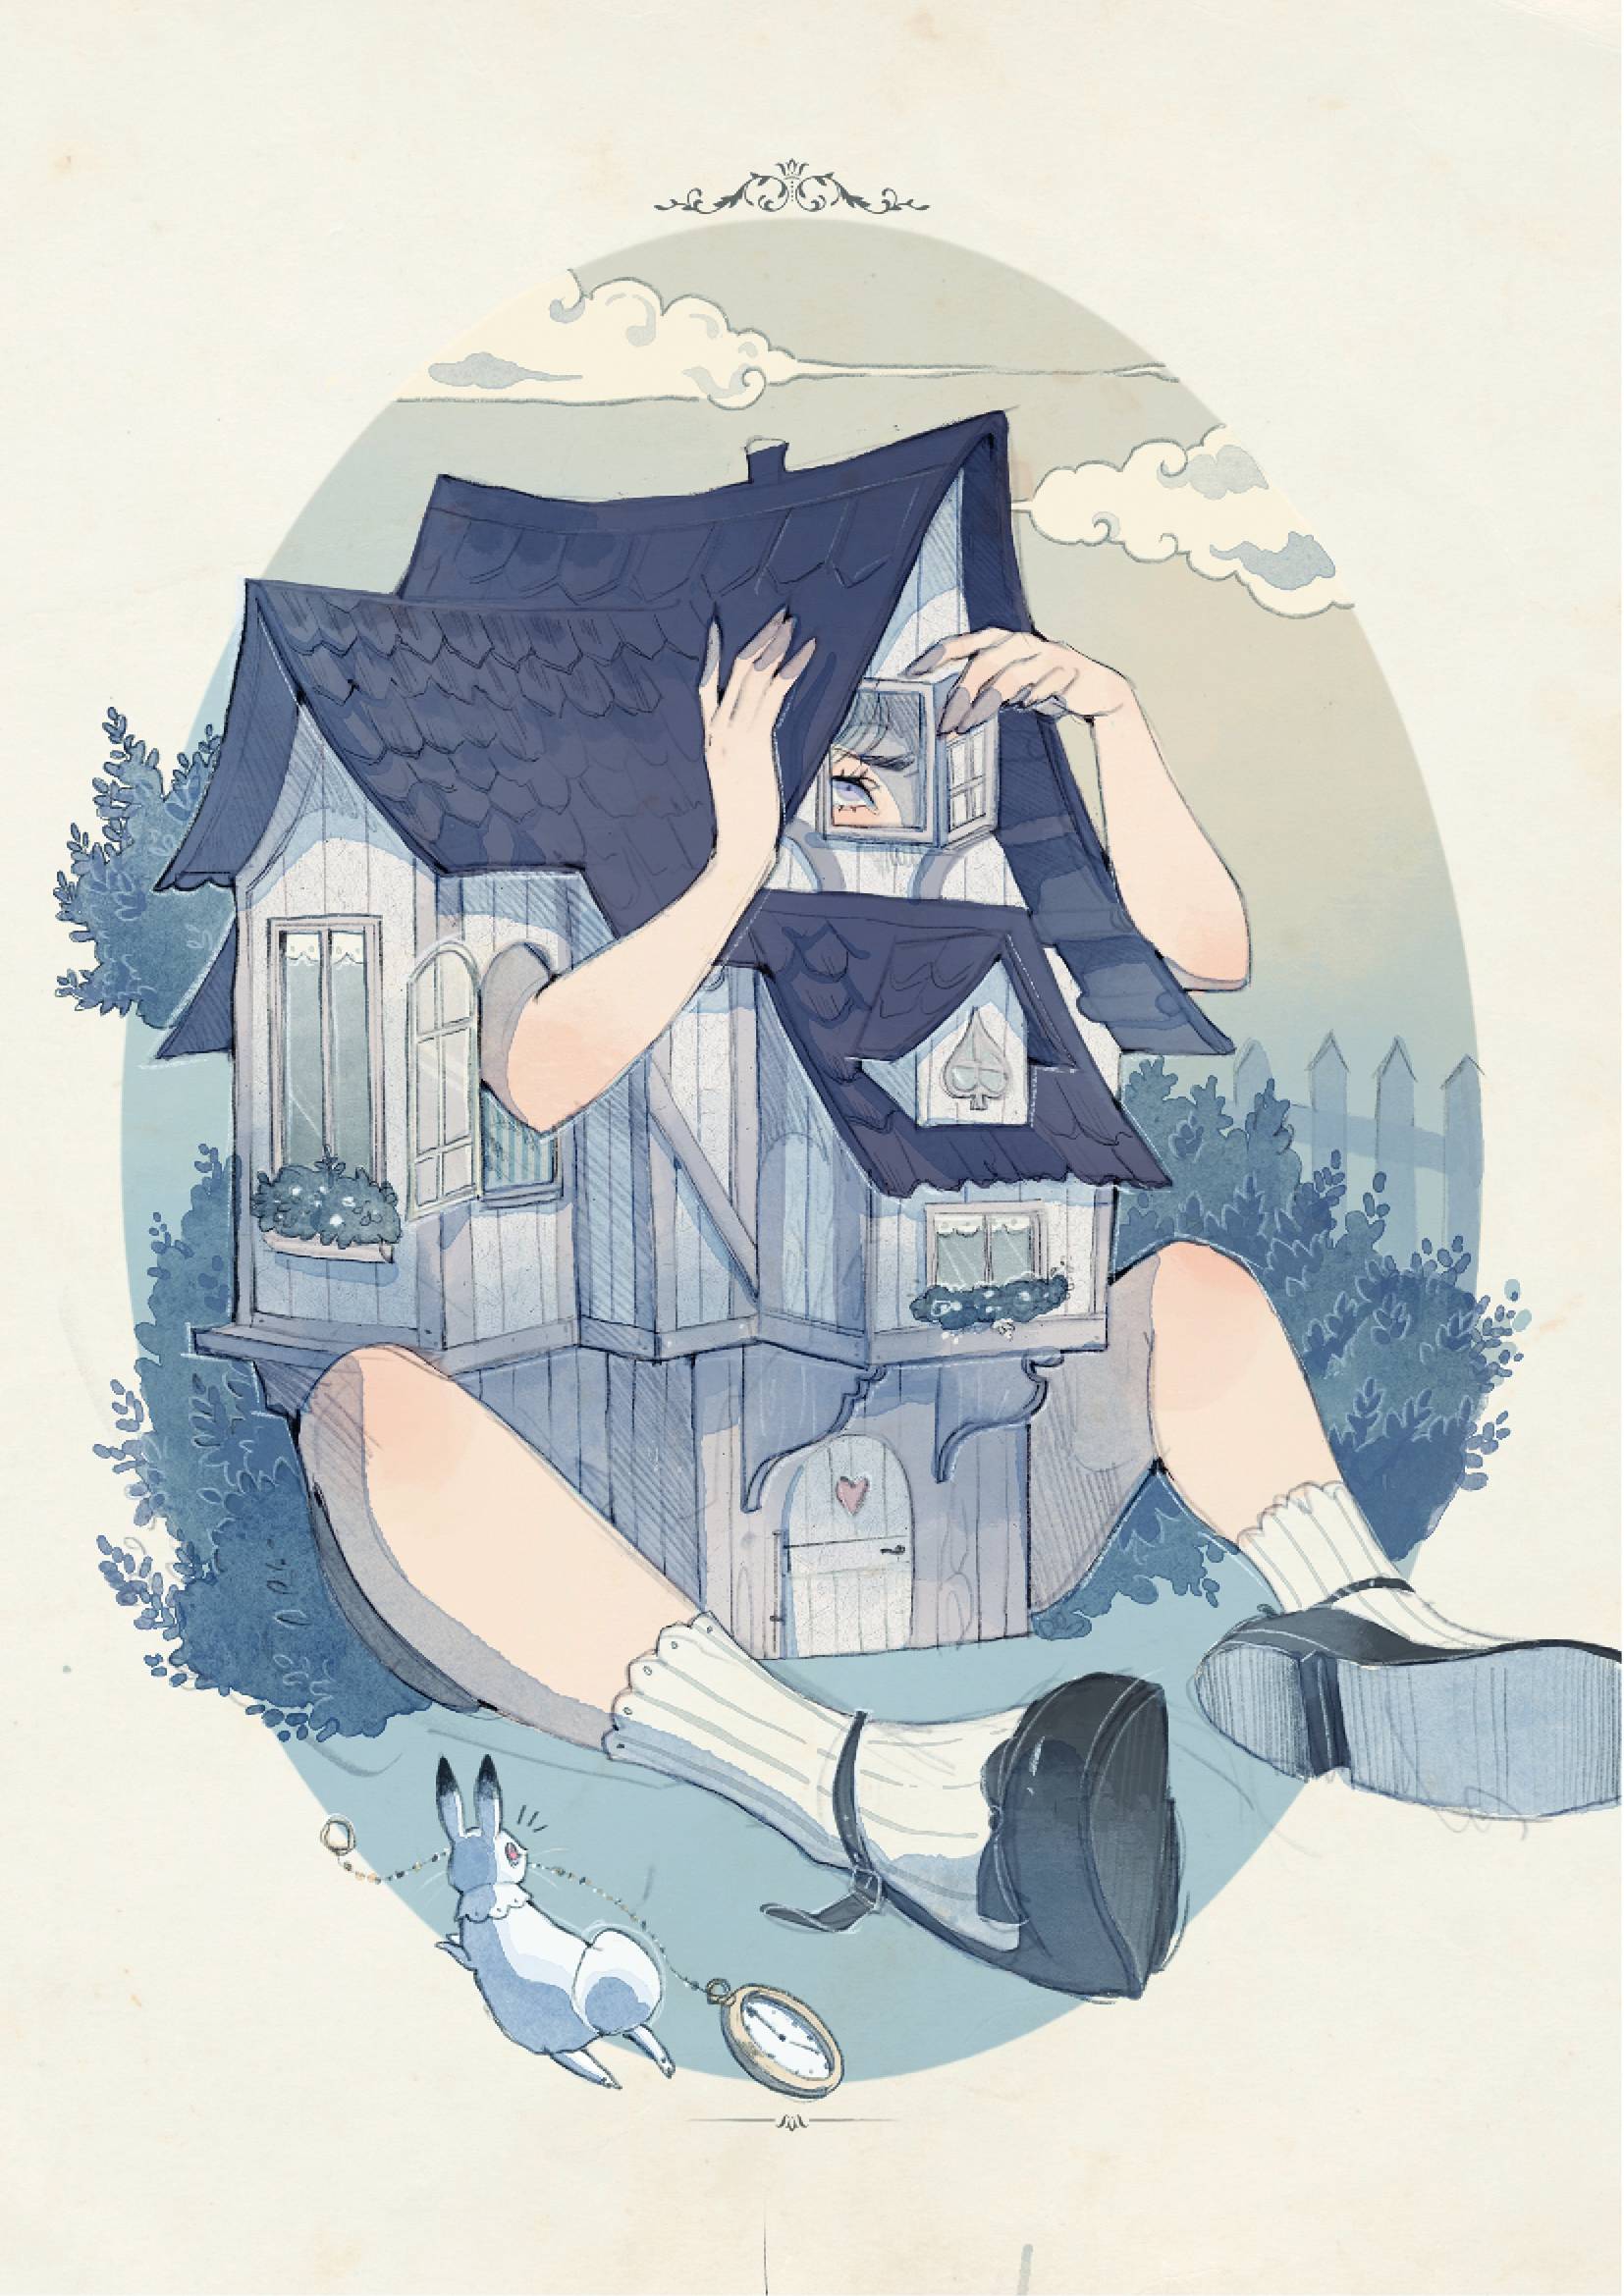 "Alice nel paese delle meraviglie", di Lewis Carroll, illustrazioni di Loputyn, traduzione e adattamento di Tiffany Vecchietti